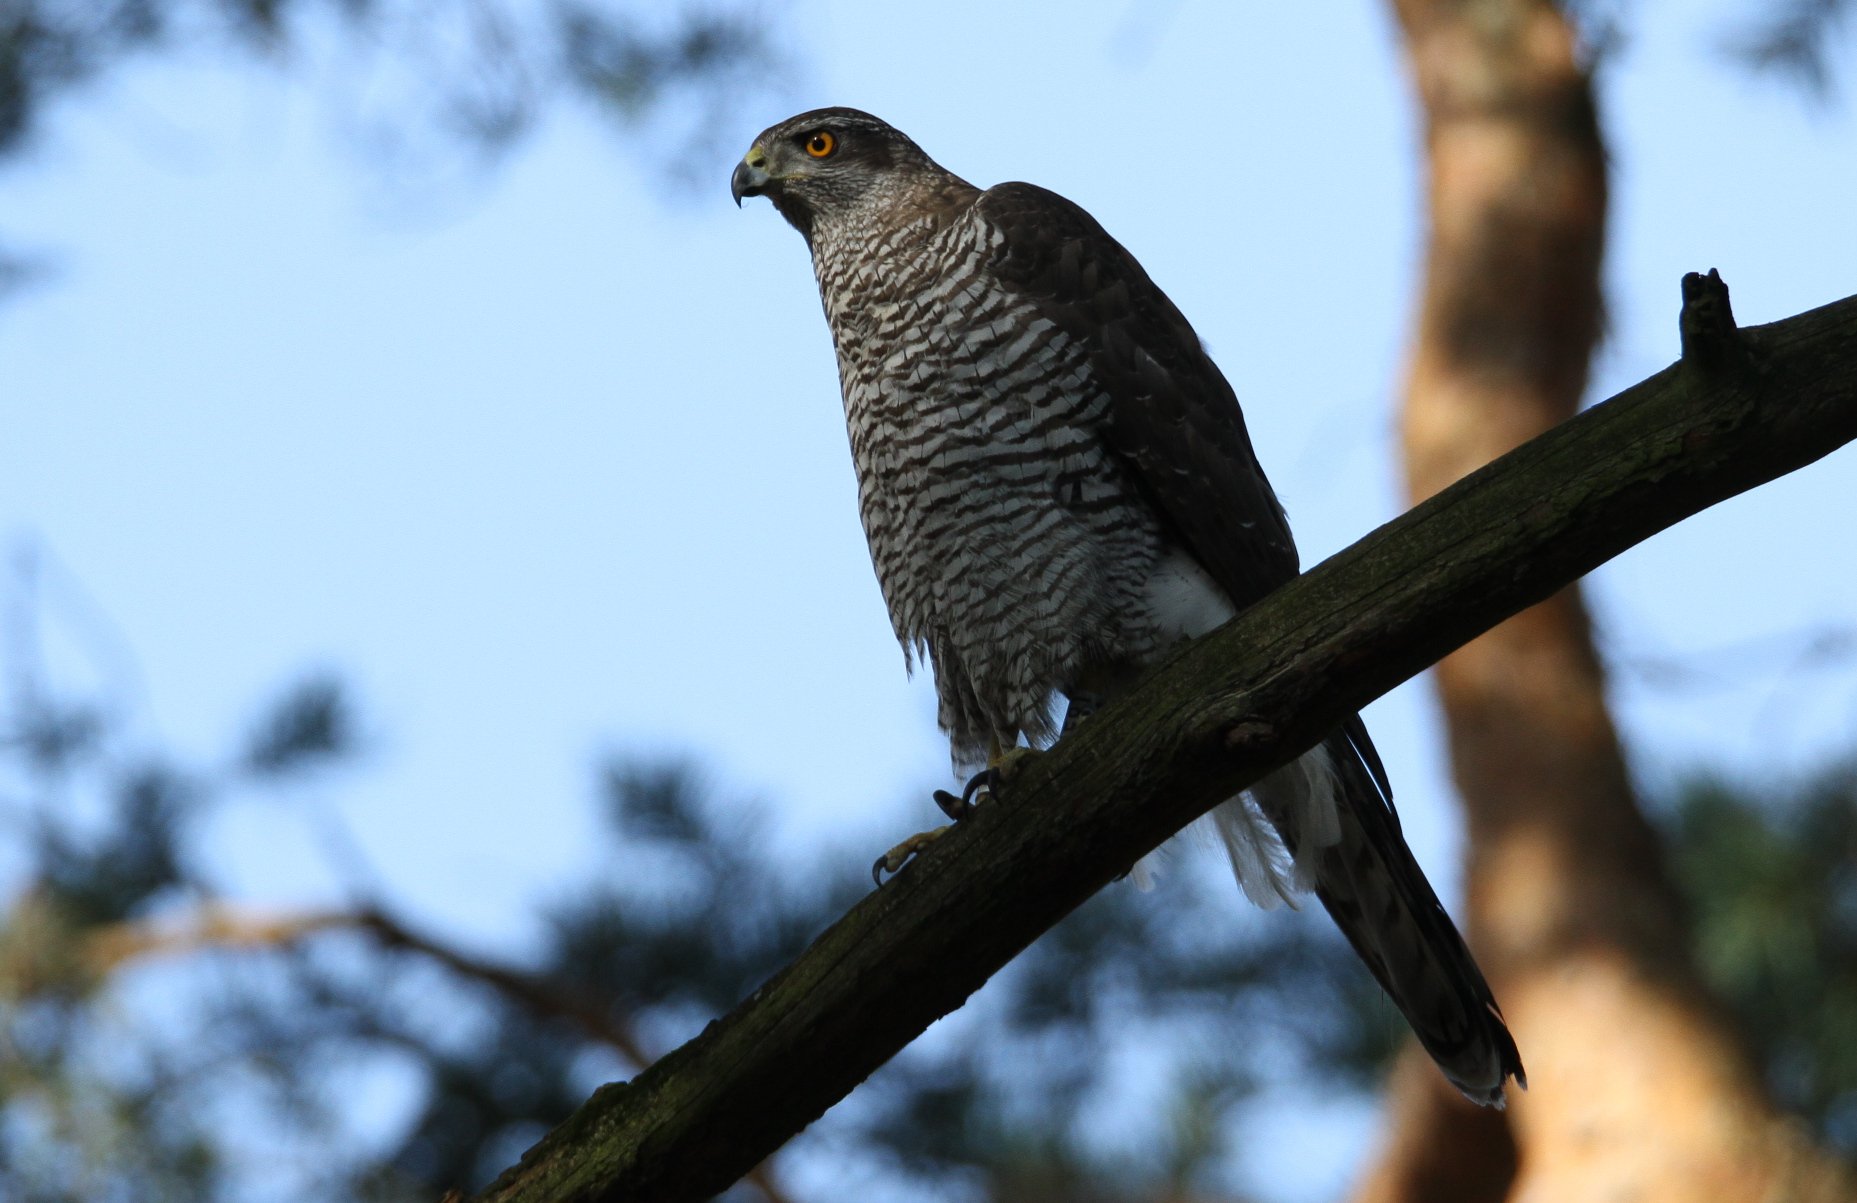 Habicht und Co creeping poisoning threatens birds of prey